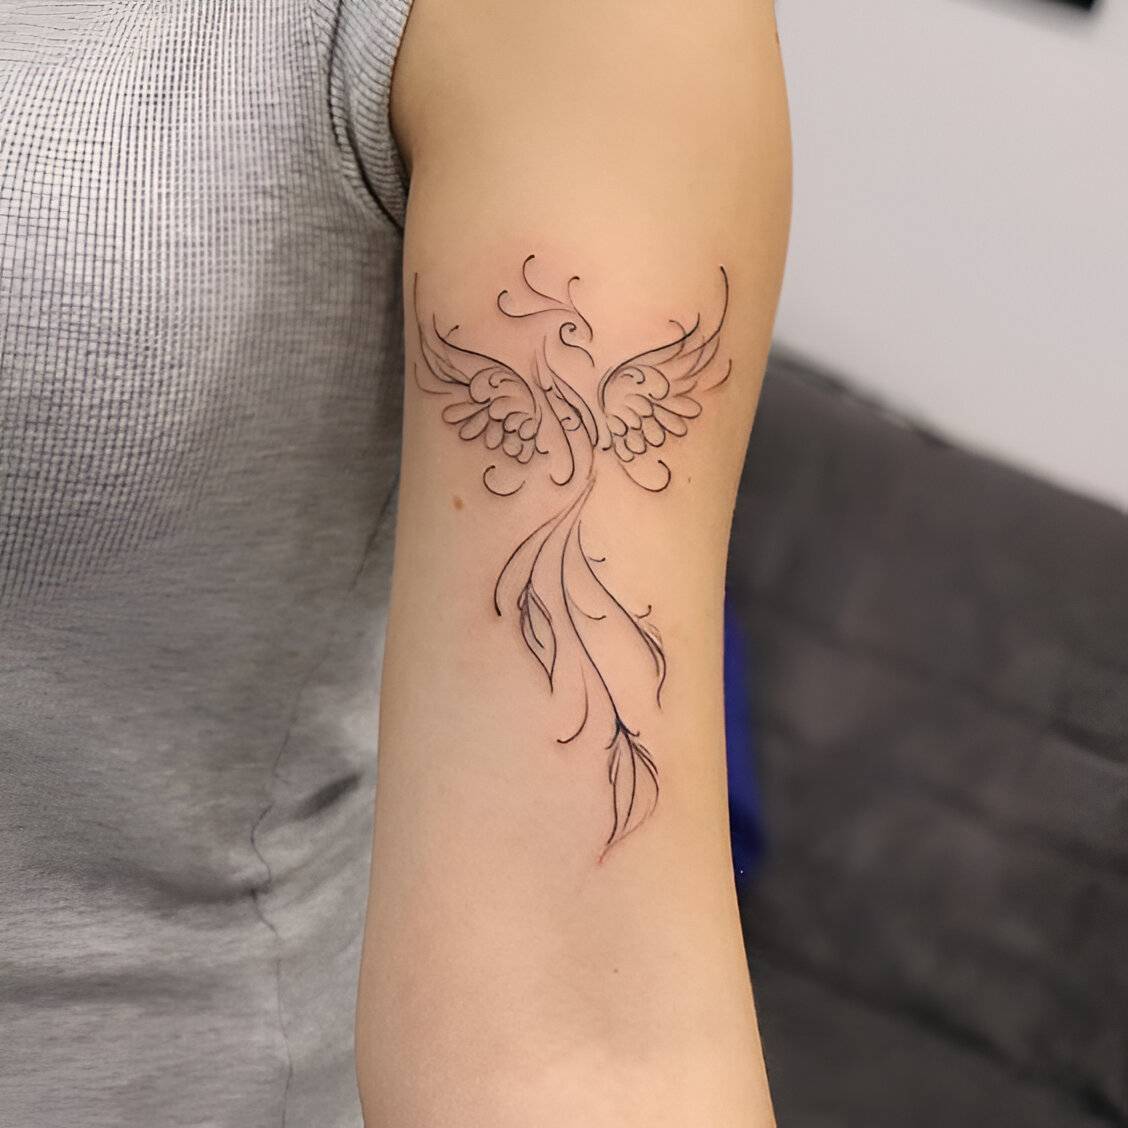 Phoenix Ink On Arm